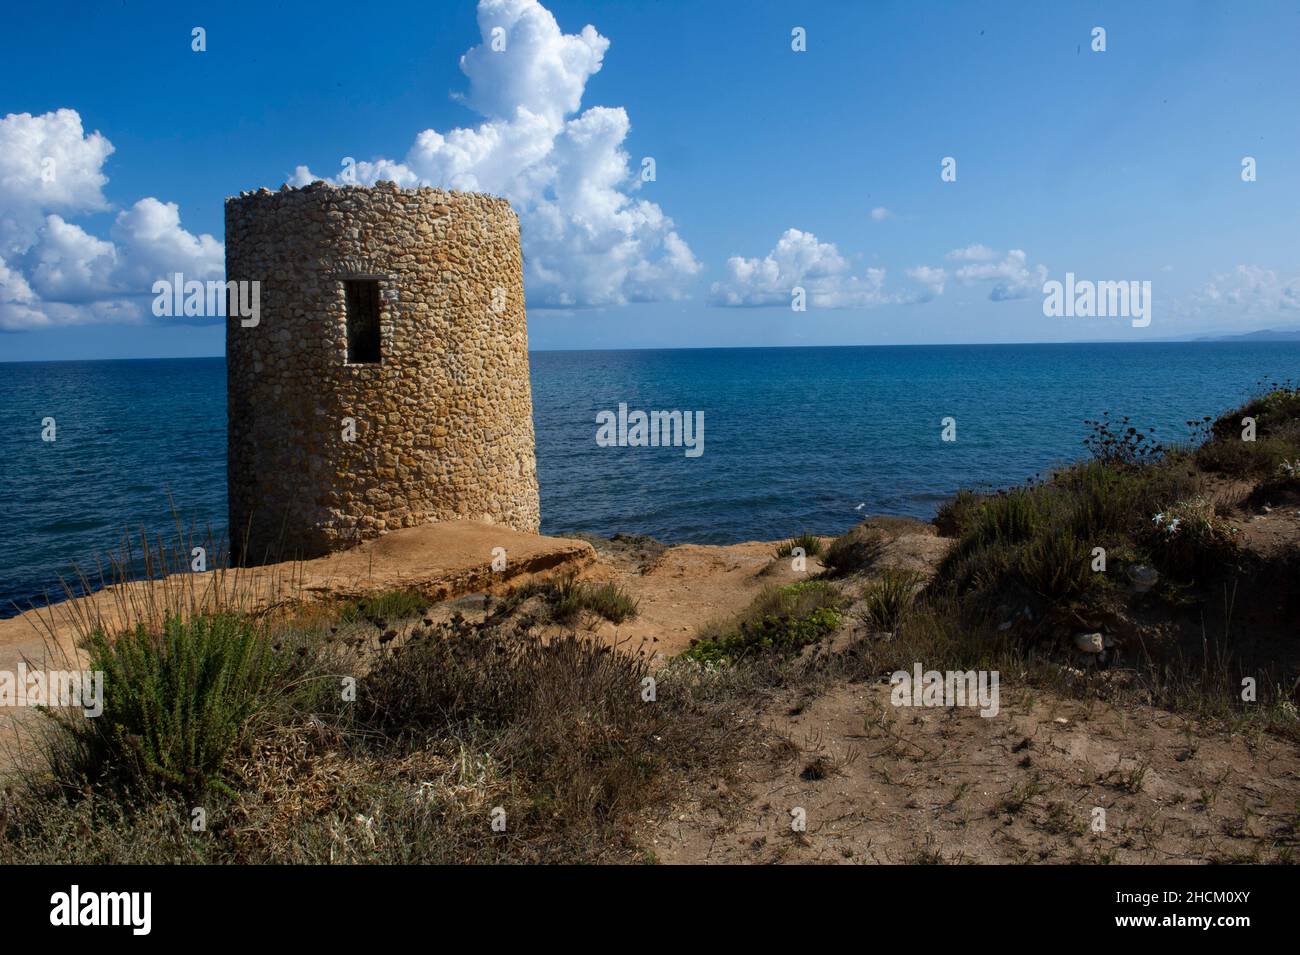 Europe, Italy, Sardinia, Porto Torres, Abbacurrente tower Stock Photo